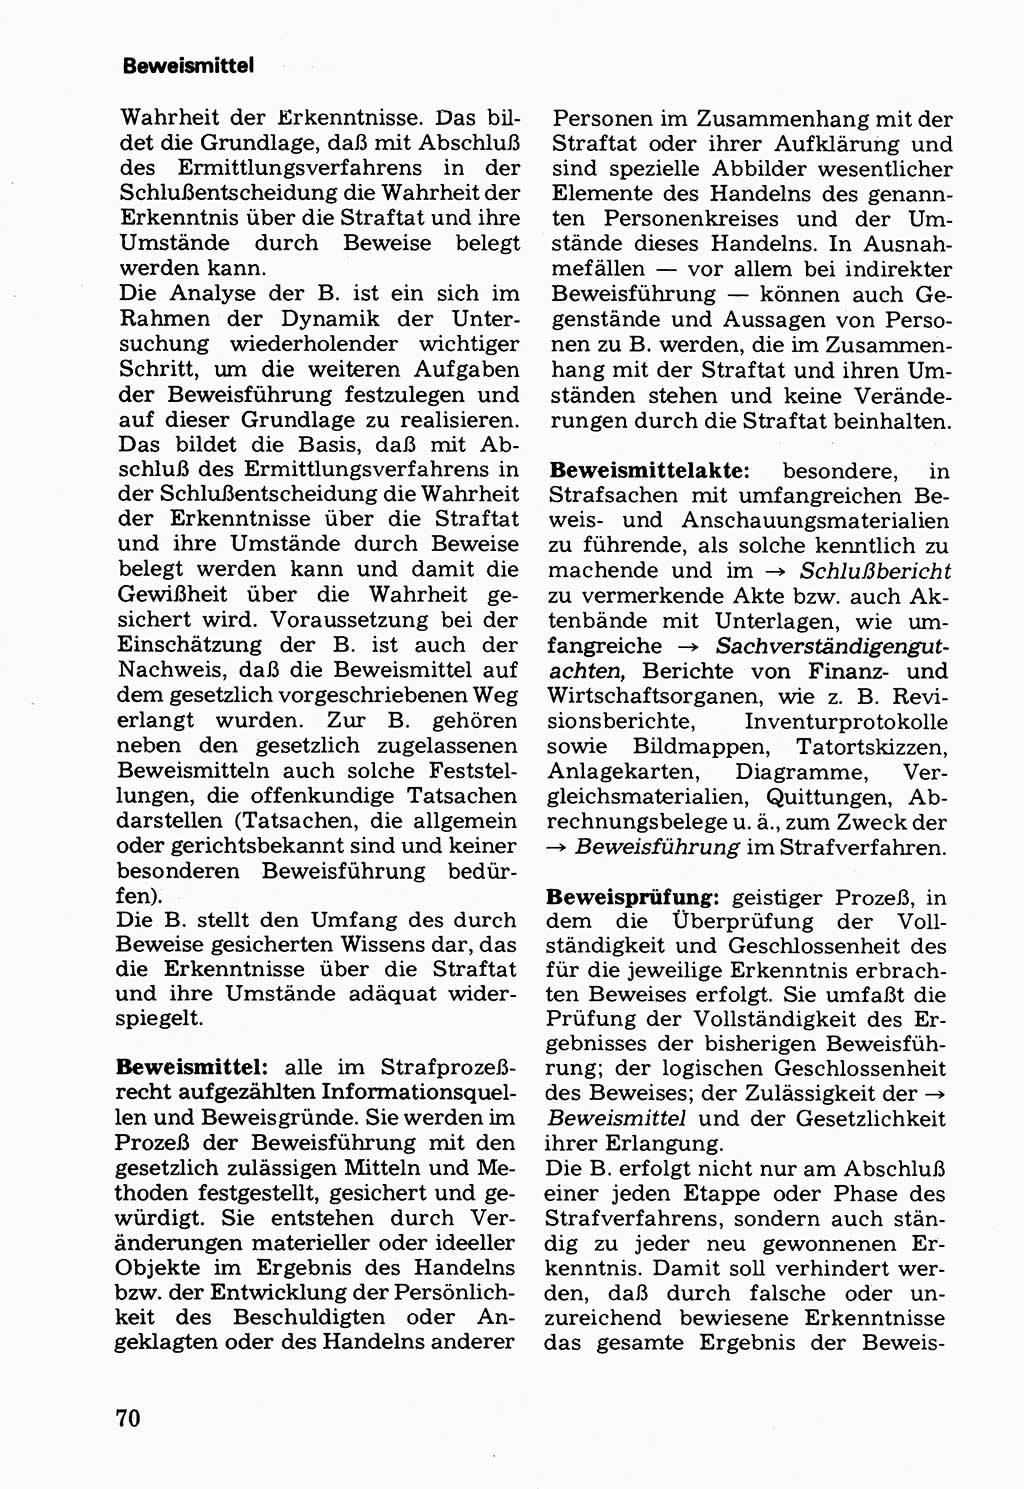 Wörterbuch der sozialistischen Kriminalistik [Deutsche Demokratische Republik (DDR)] 1981, Seite 70 (Wb. soz. Krim. DDR 1981, S. 70)